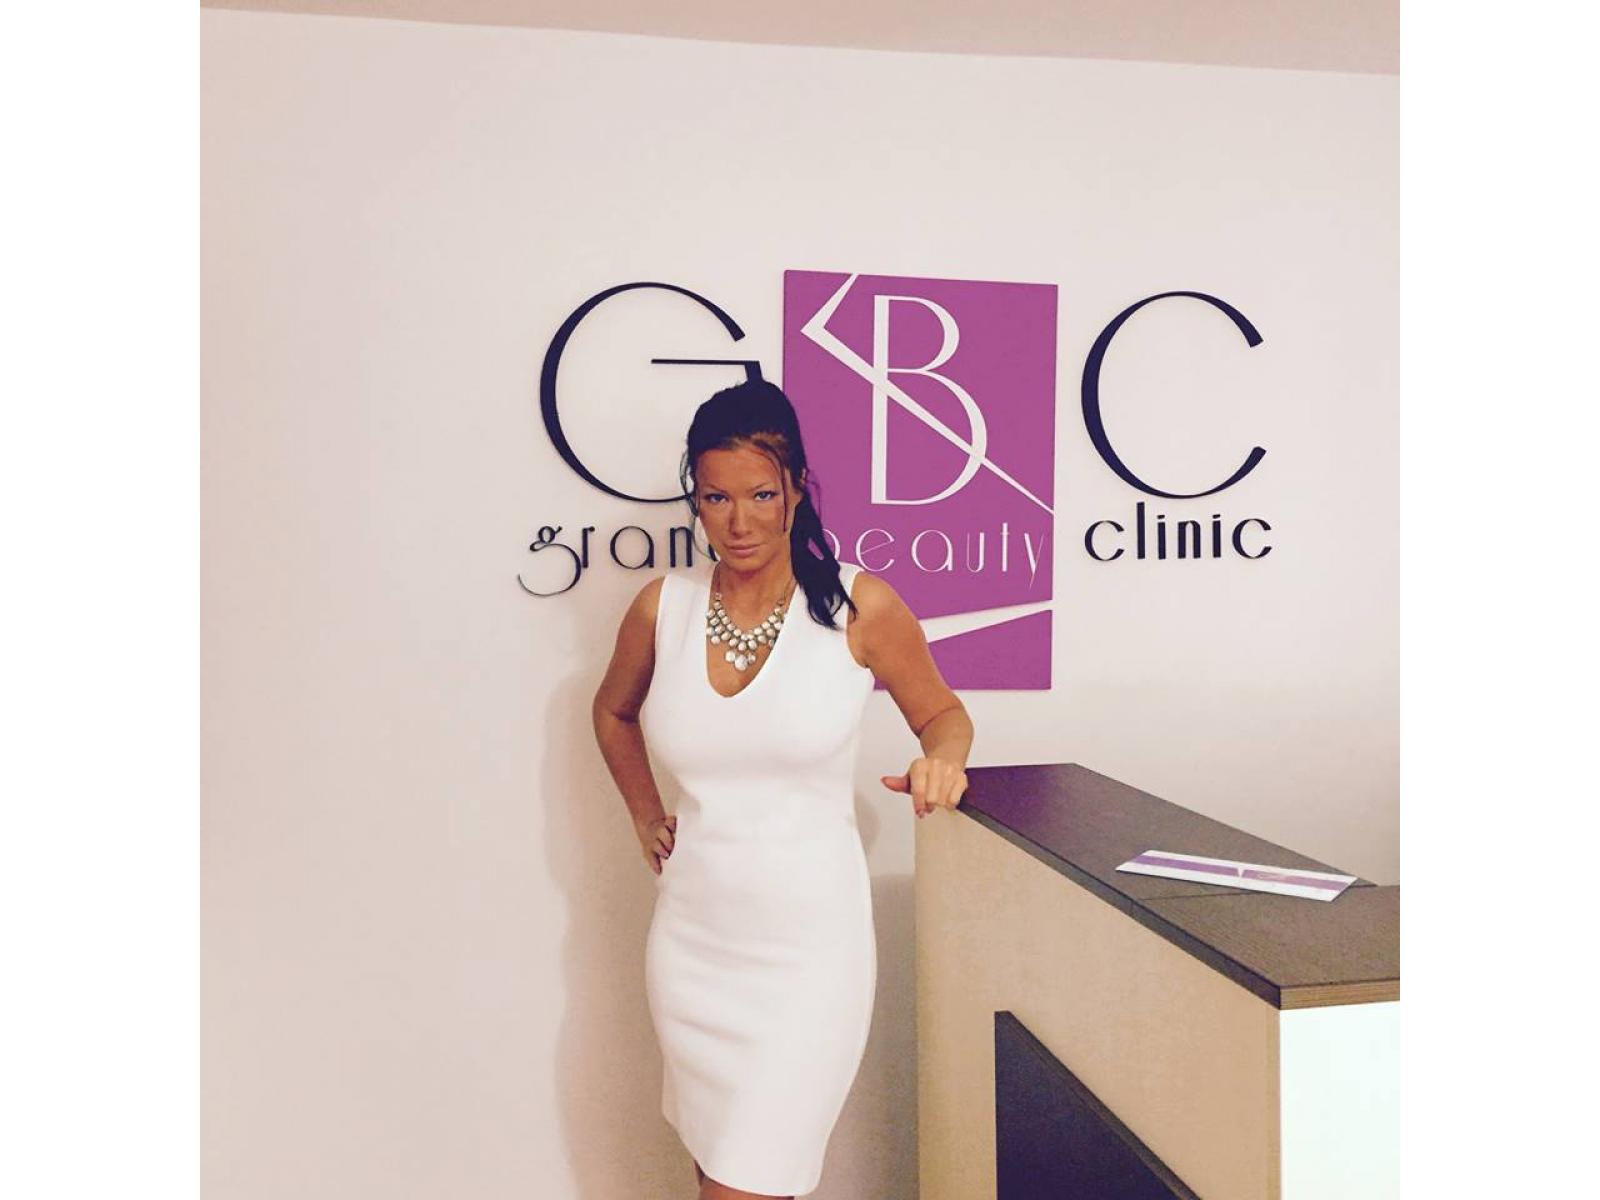 Grand Beauty Clinic - 11054501_10153183223294243_7784657006014025633_n.jpg